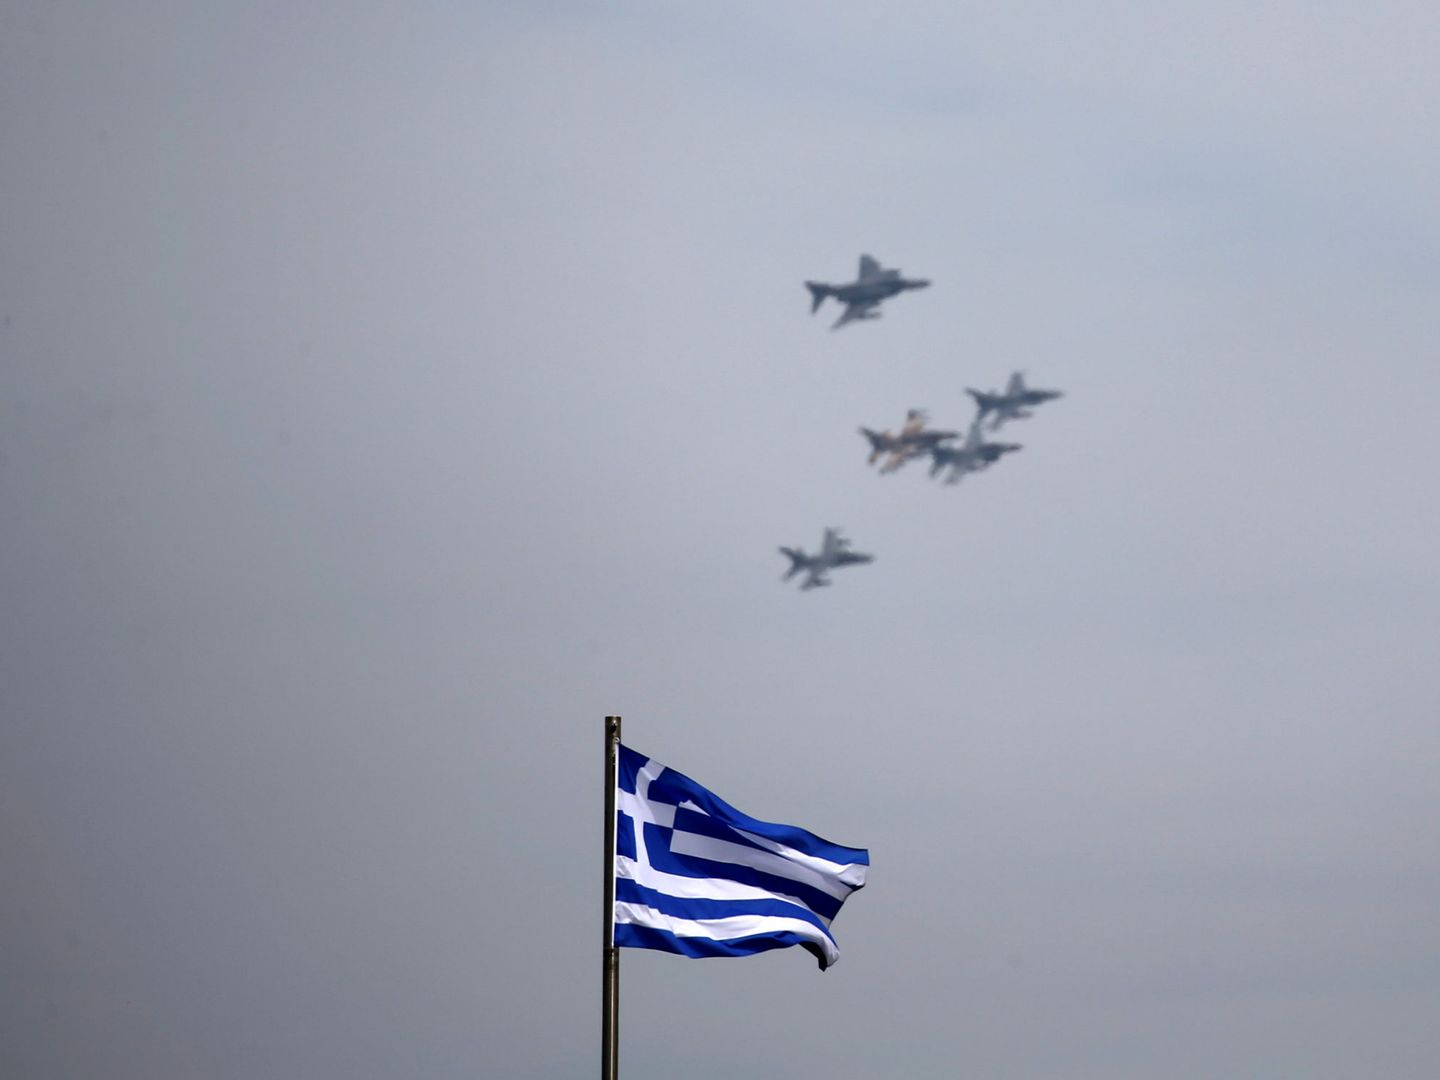 Cazas de la fuerza aérea de Grecia sobrevuelan Atenas durante una exhibición aérea, en abril de 2017. (Reuters)